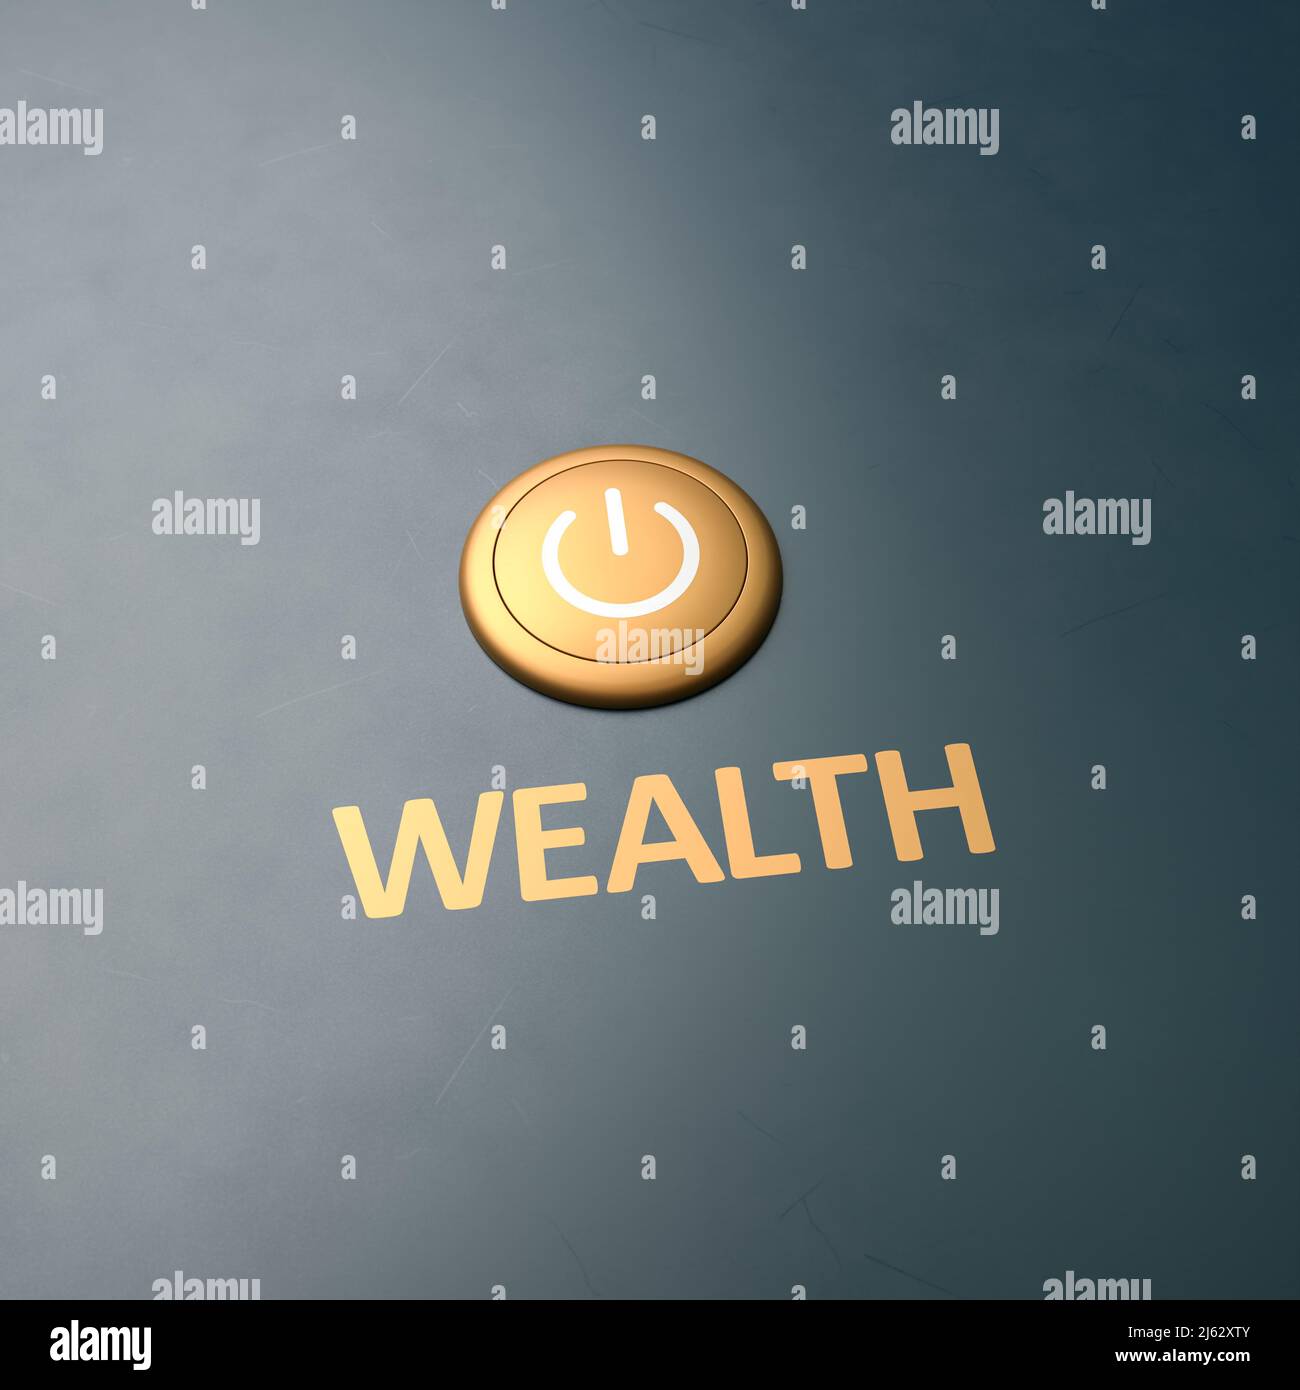 Golden Button mit dem Wort 'Wealth' als Label - Konzept für das Erhalten von Wohlstand. Platz zum besseren Zuschneiden kopieren Stockfoto